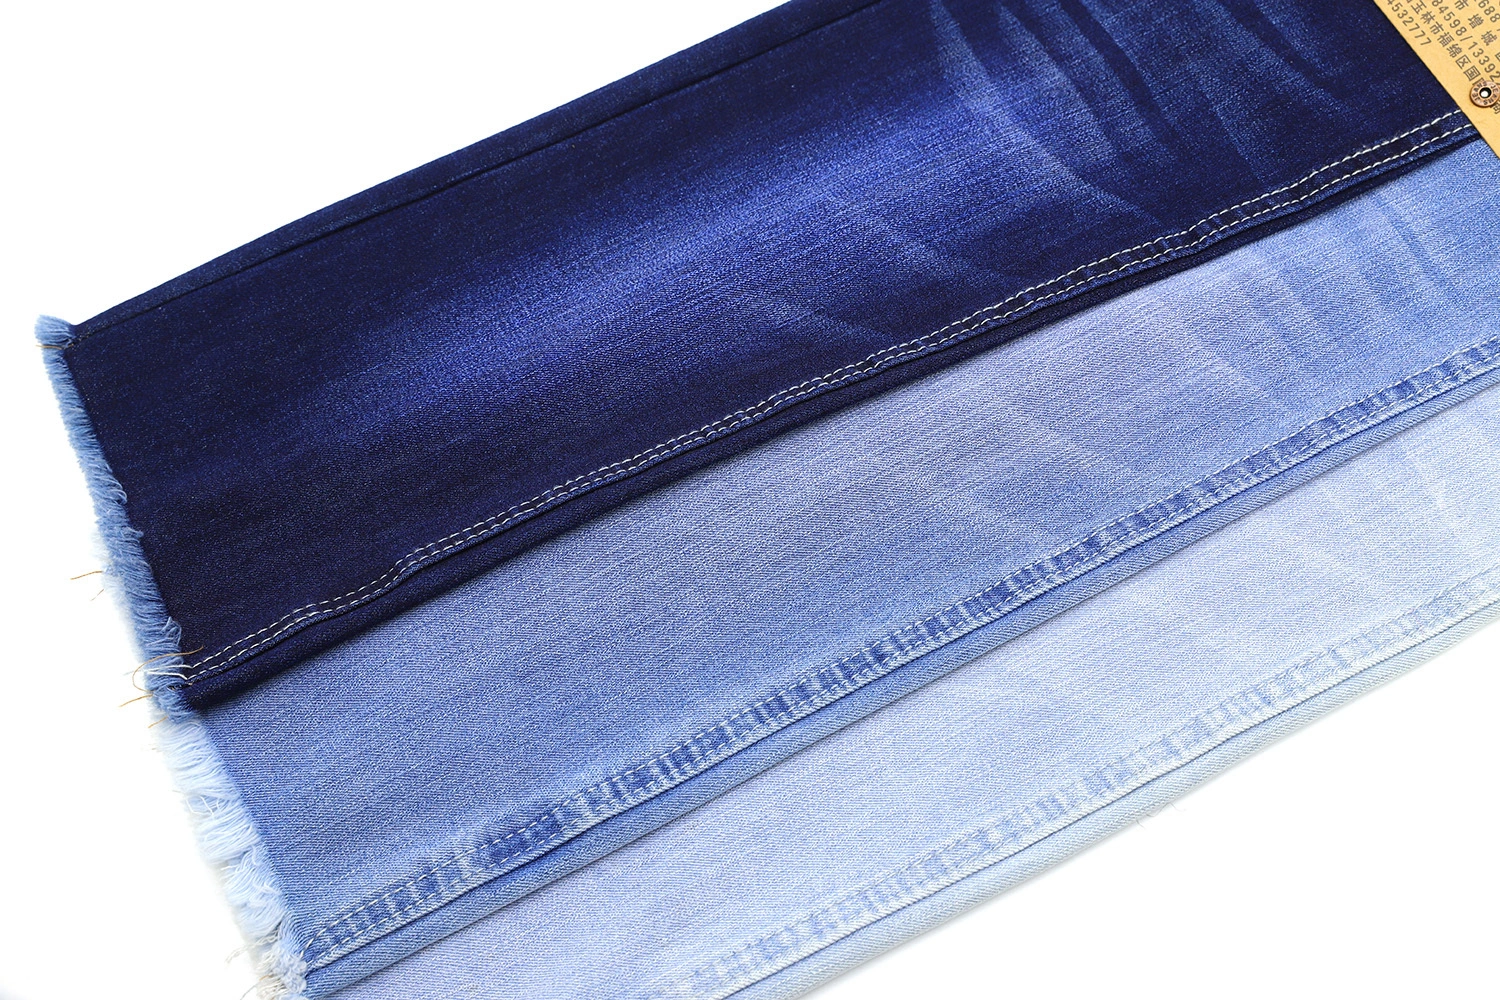 112A-2  69.5%Cotton  26%Poly  4.5%Spandex 4-way Stretch Denim Fabric with Slub 3